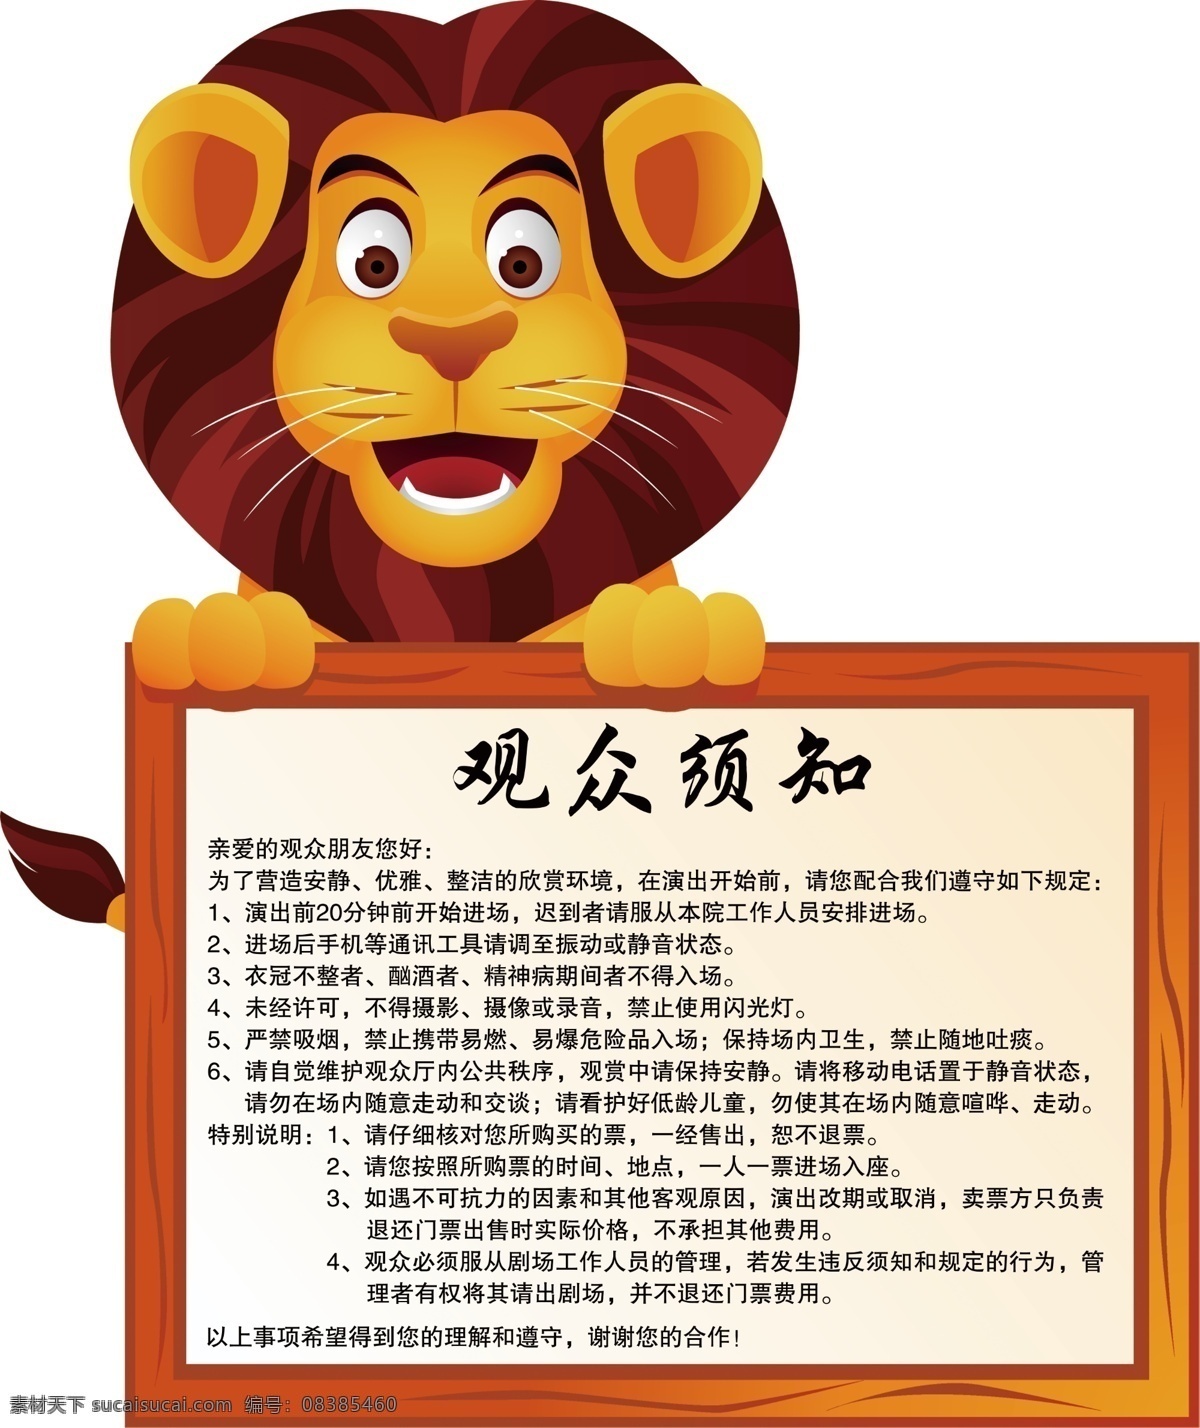 狮子 卡通 卡通狮子 动物 木牌 观众 观众须知 卡通动物 展示牌 牌子